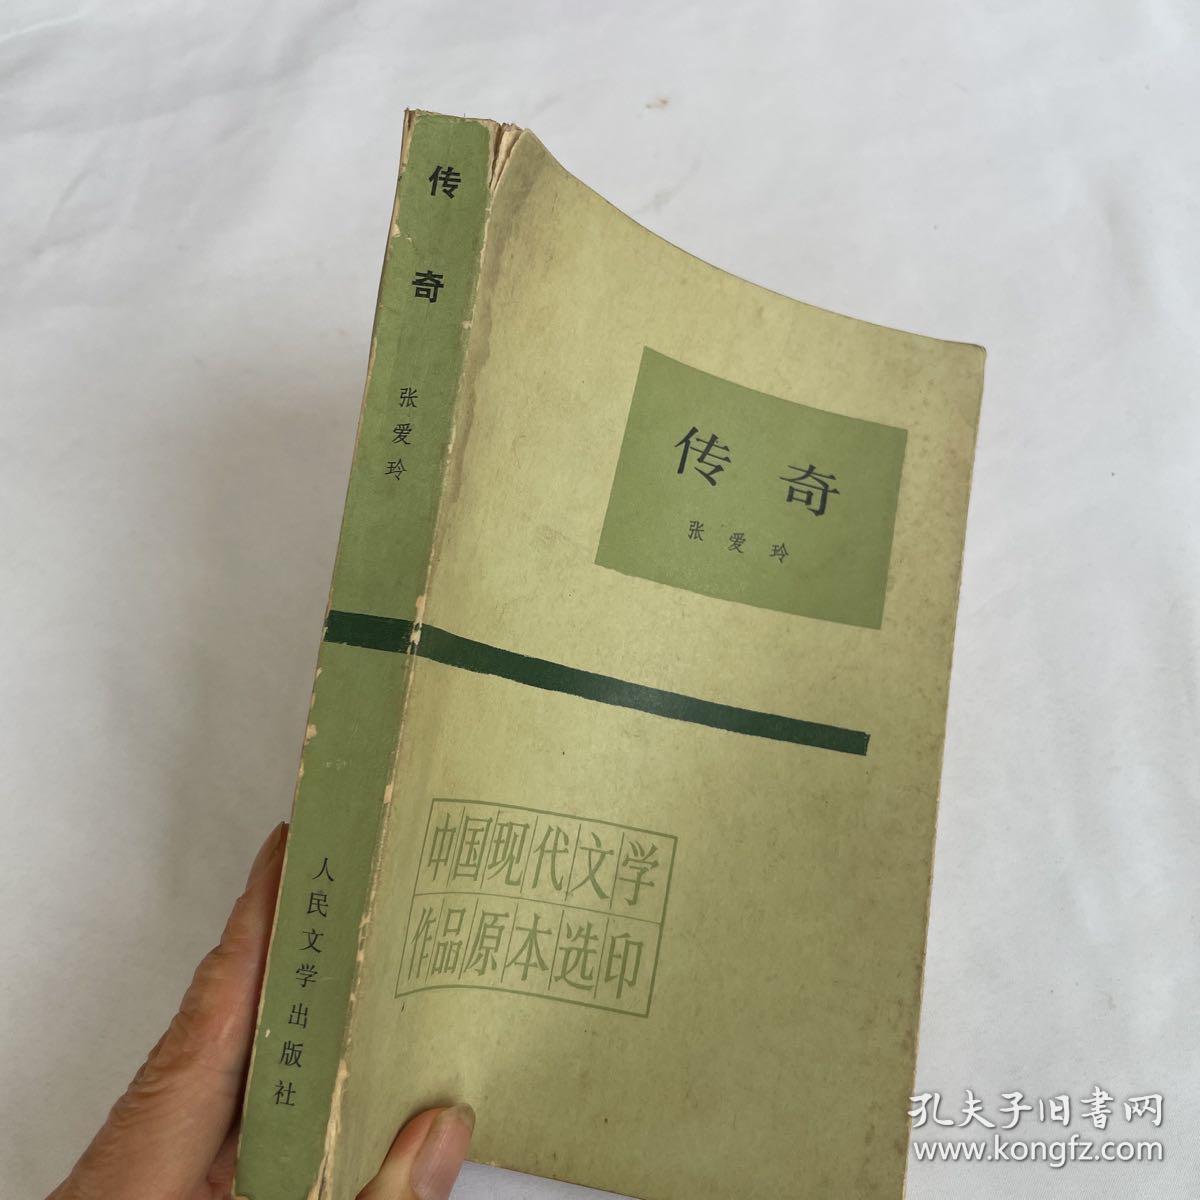 中国现代文学作品原本选印   传奇 张爱玲 品相见图